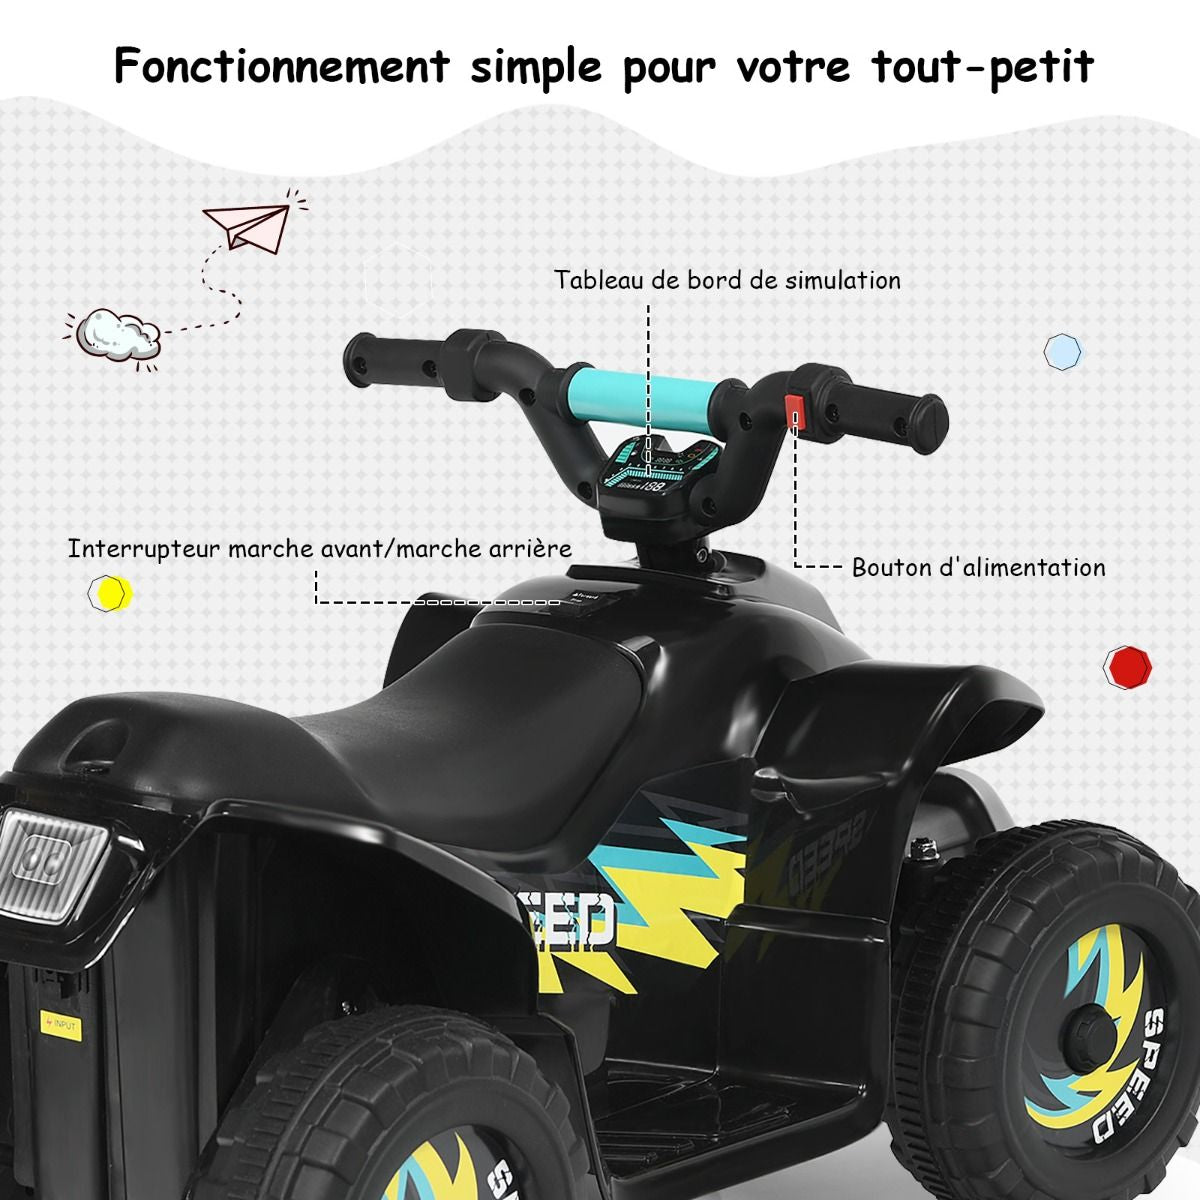 Quad Buggy Electrique Pour Enfant 6 V 4,5 Km-H MAX Voiture Pour Enfants De 3 Ans+ Noir